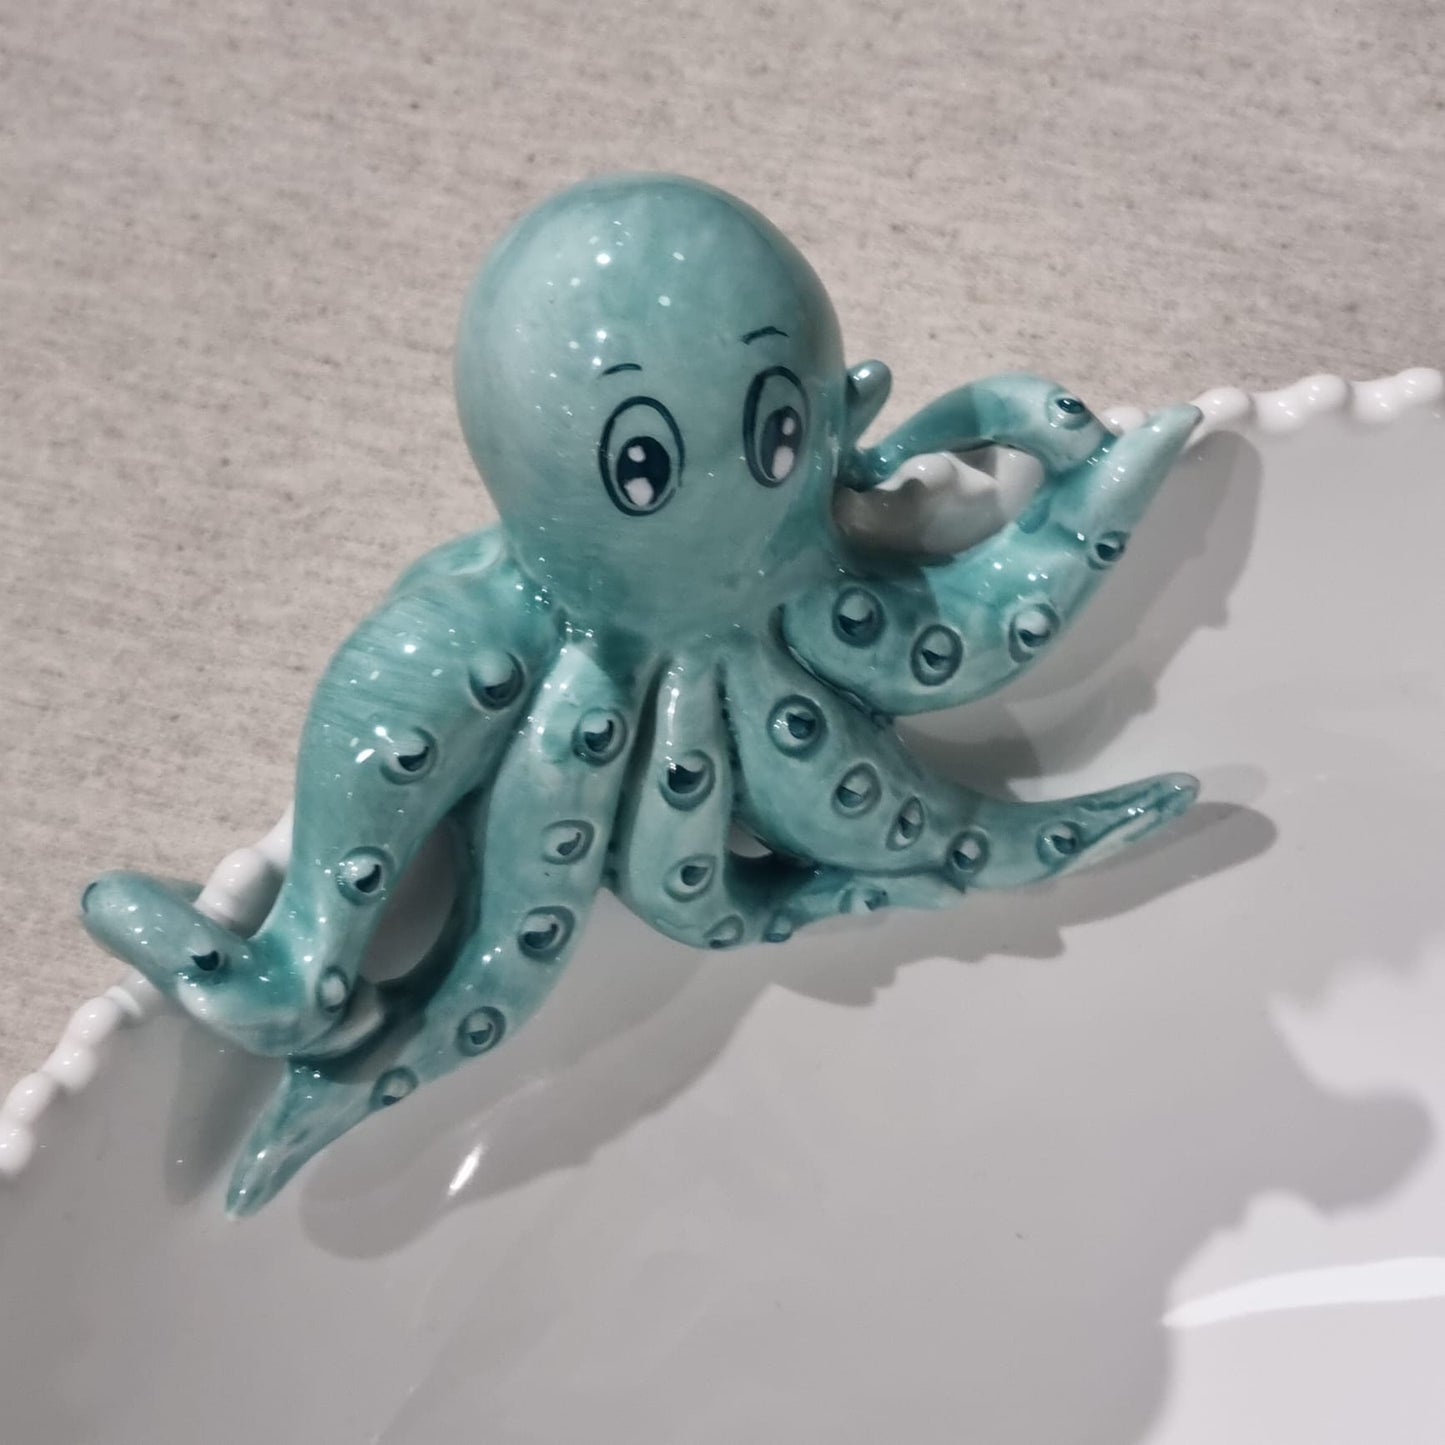 Bļoda ar astoņkāju dekoriem, diam. 35 cm